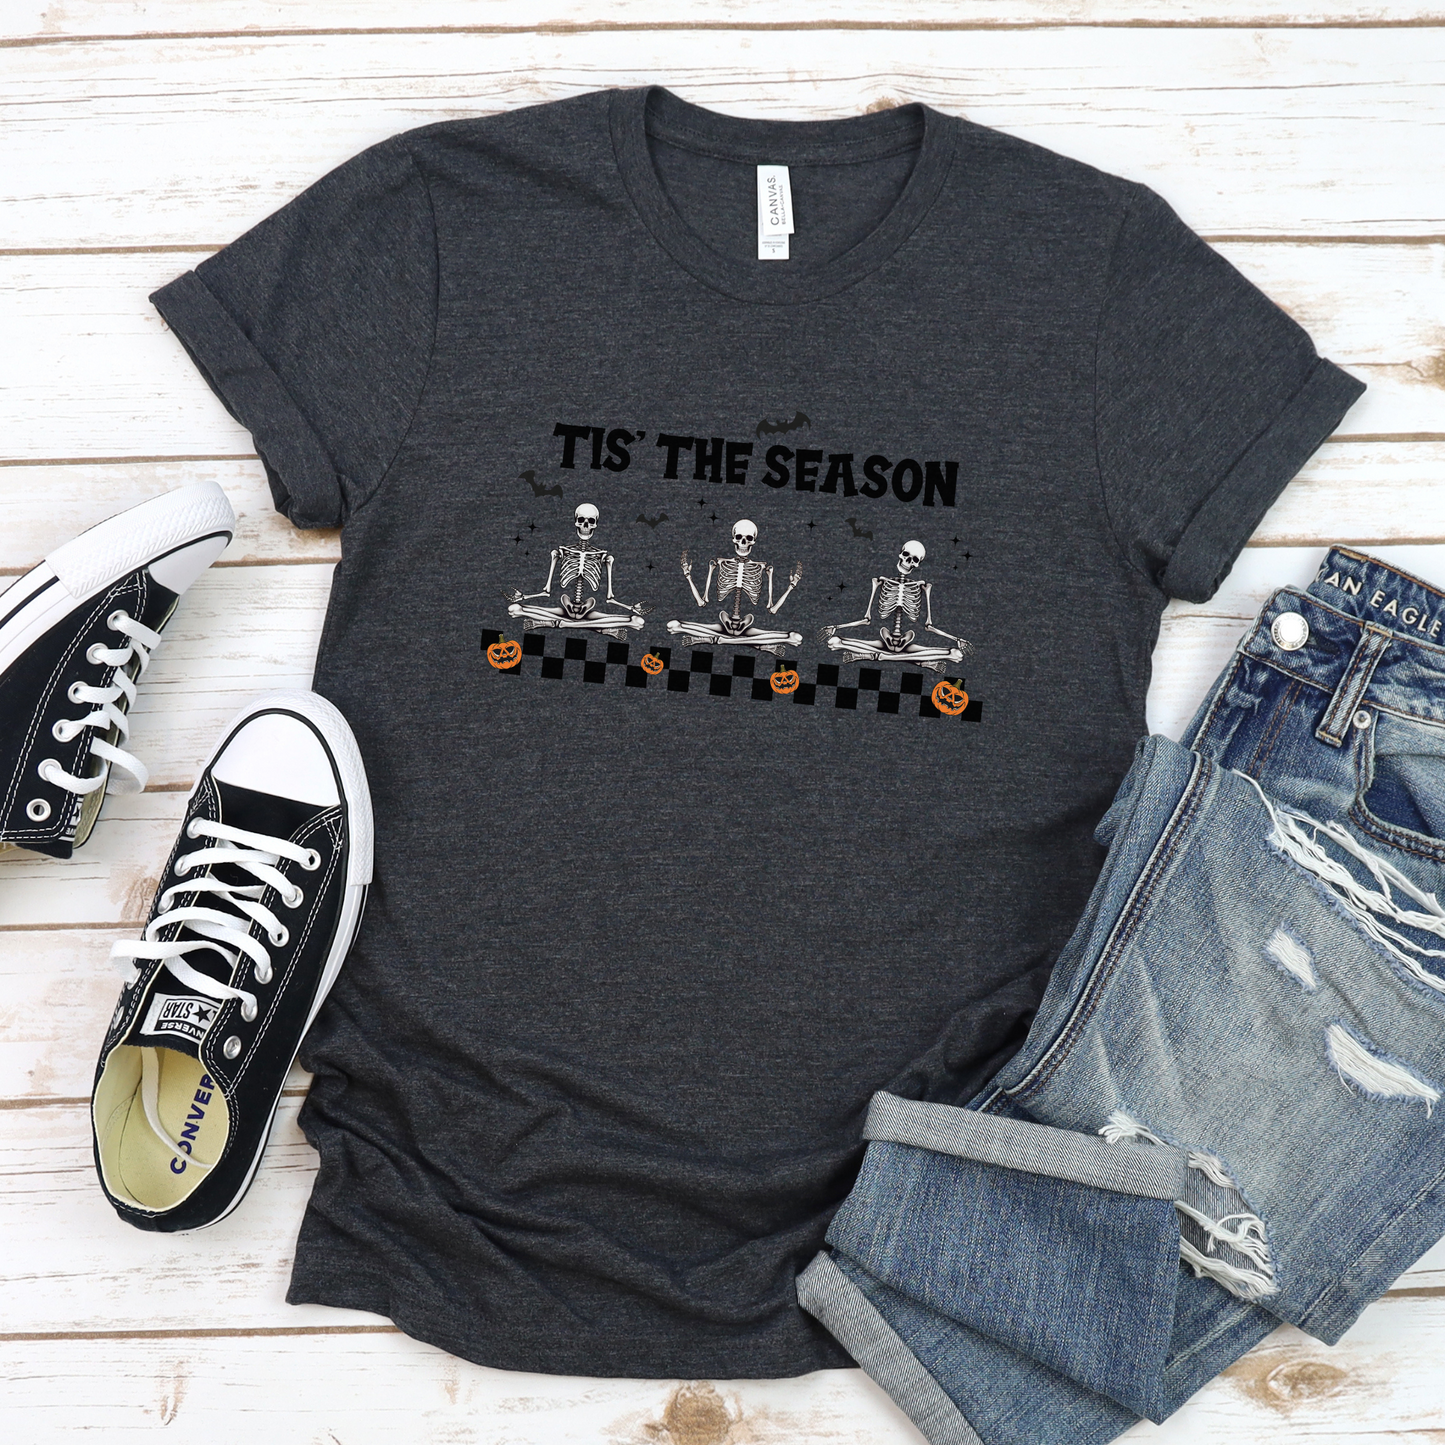 Tis The Season Skelton T-Shirt